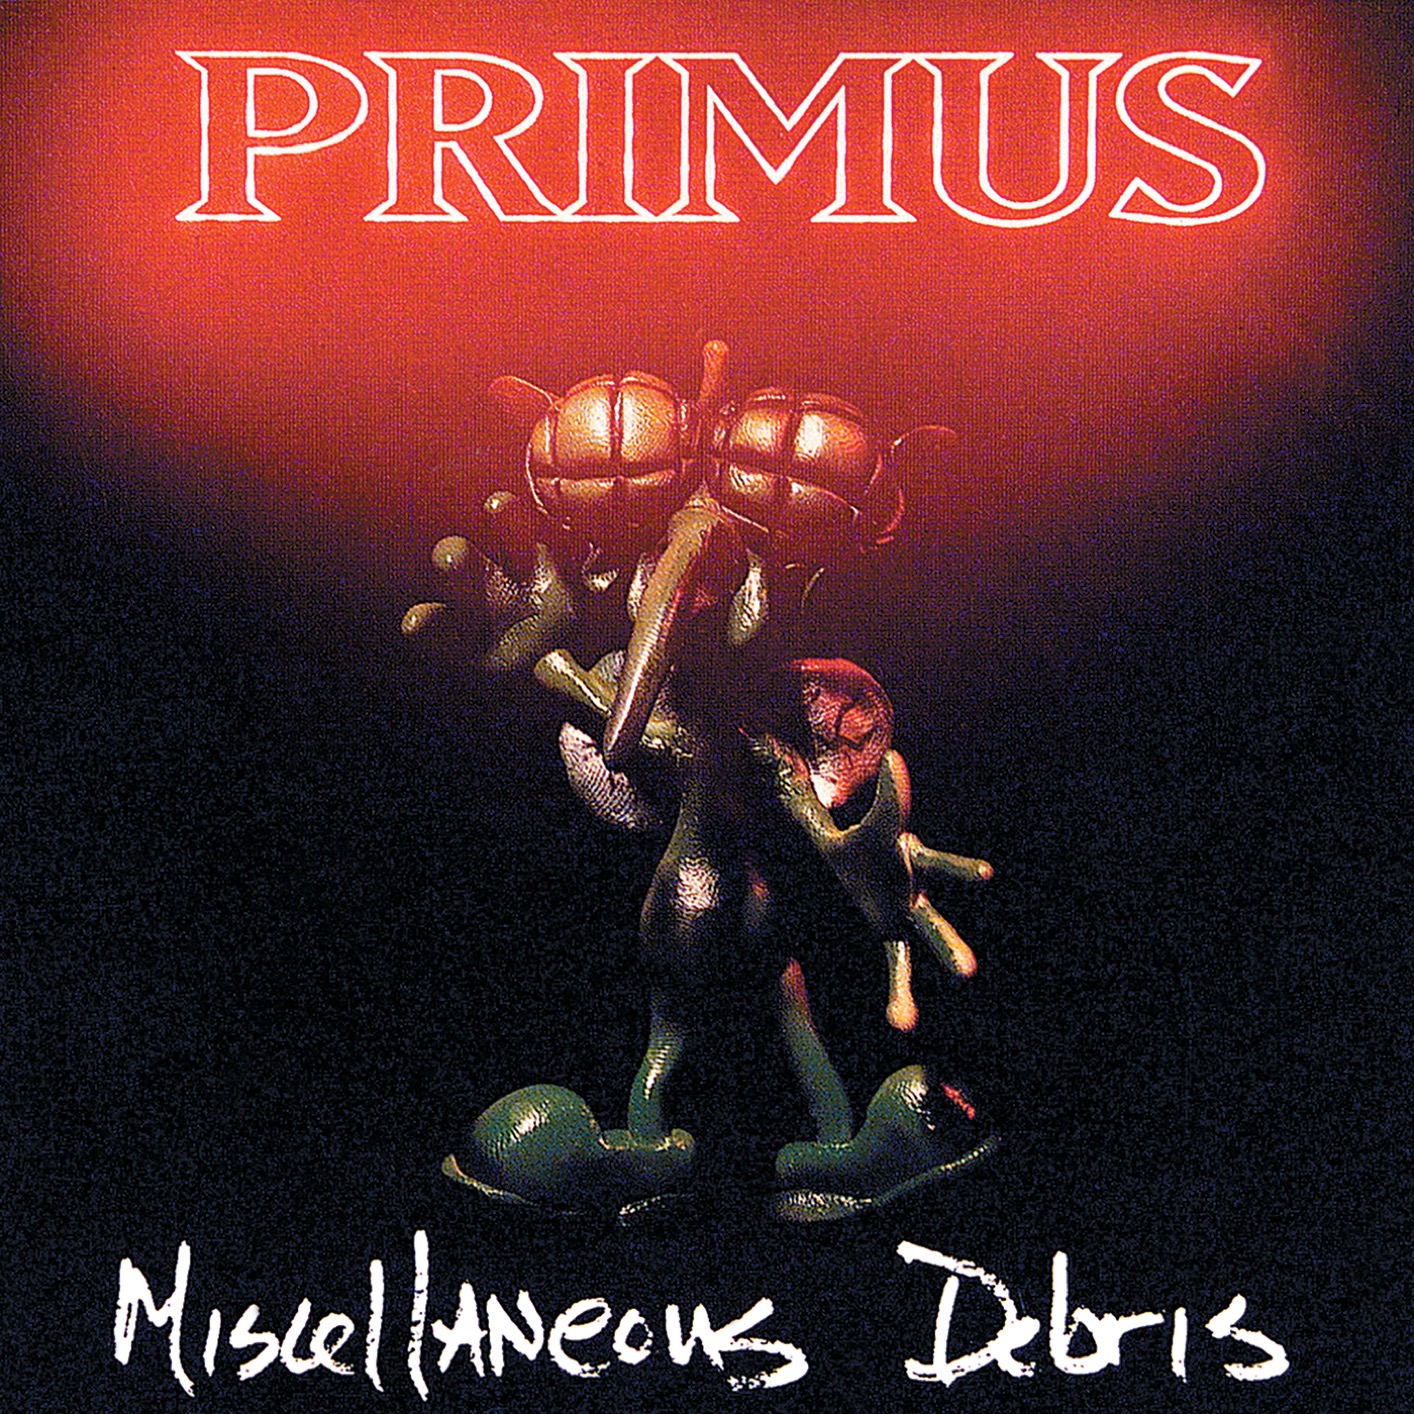 Primus - Miscellaneous Debris (1992/2018) [FLAC 24bit/192kHz]